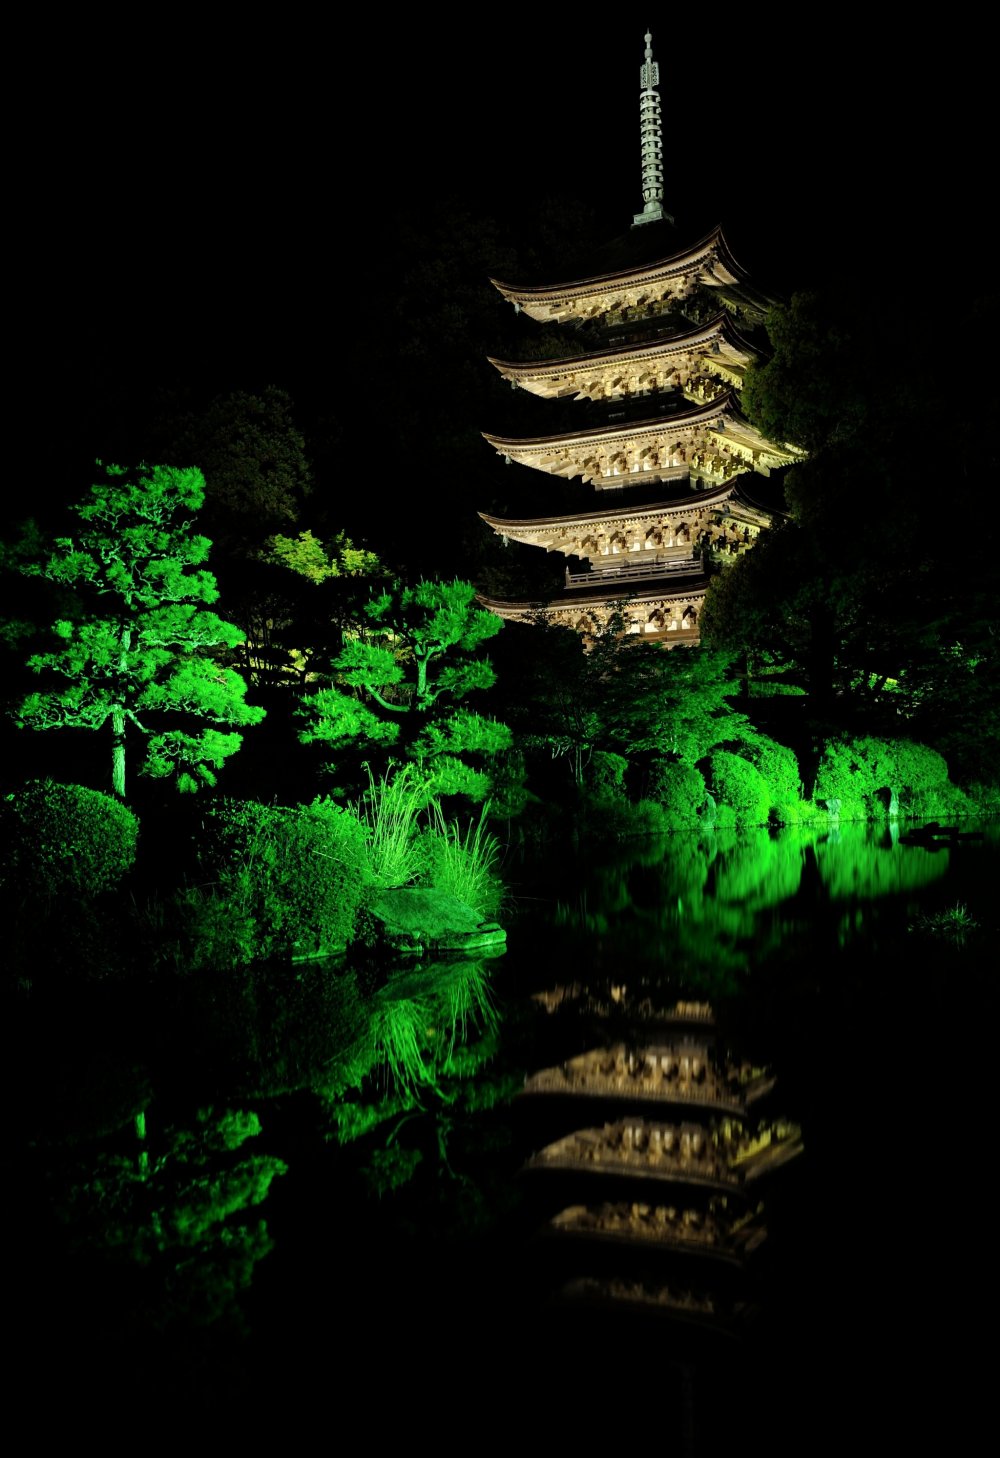 京都の醍醐寺・奈良の法隆寺のものとならびここの塔は日本三名塔の一つに数えられる